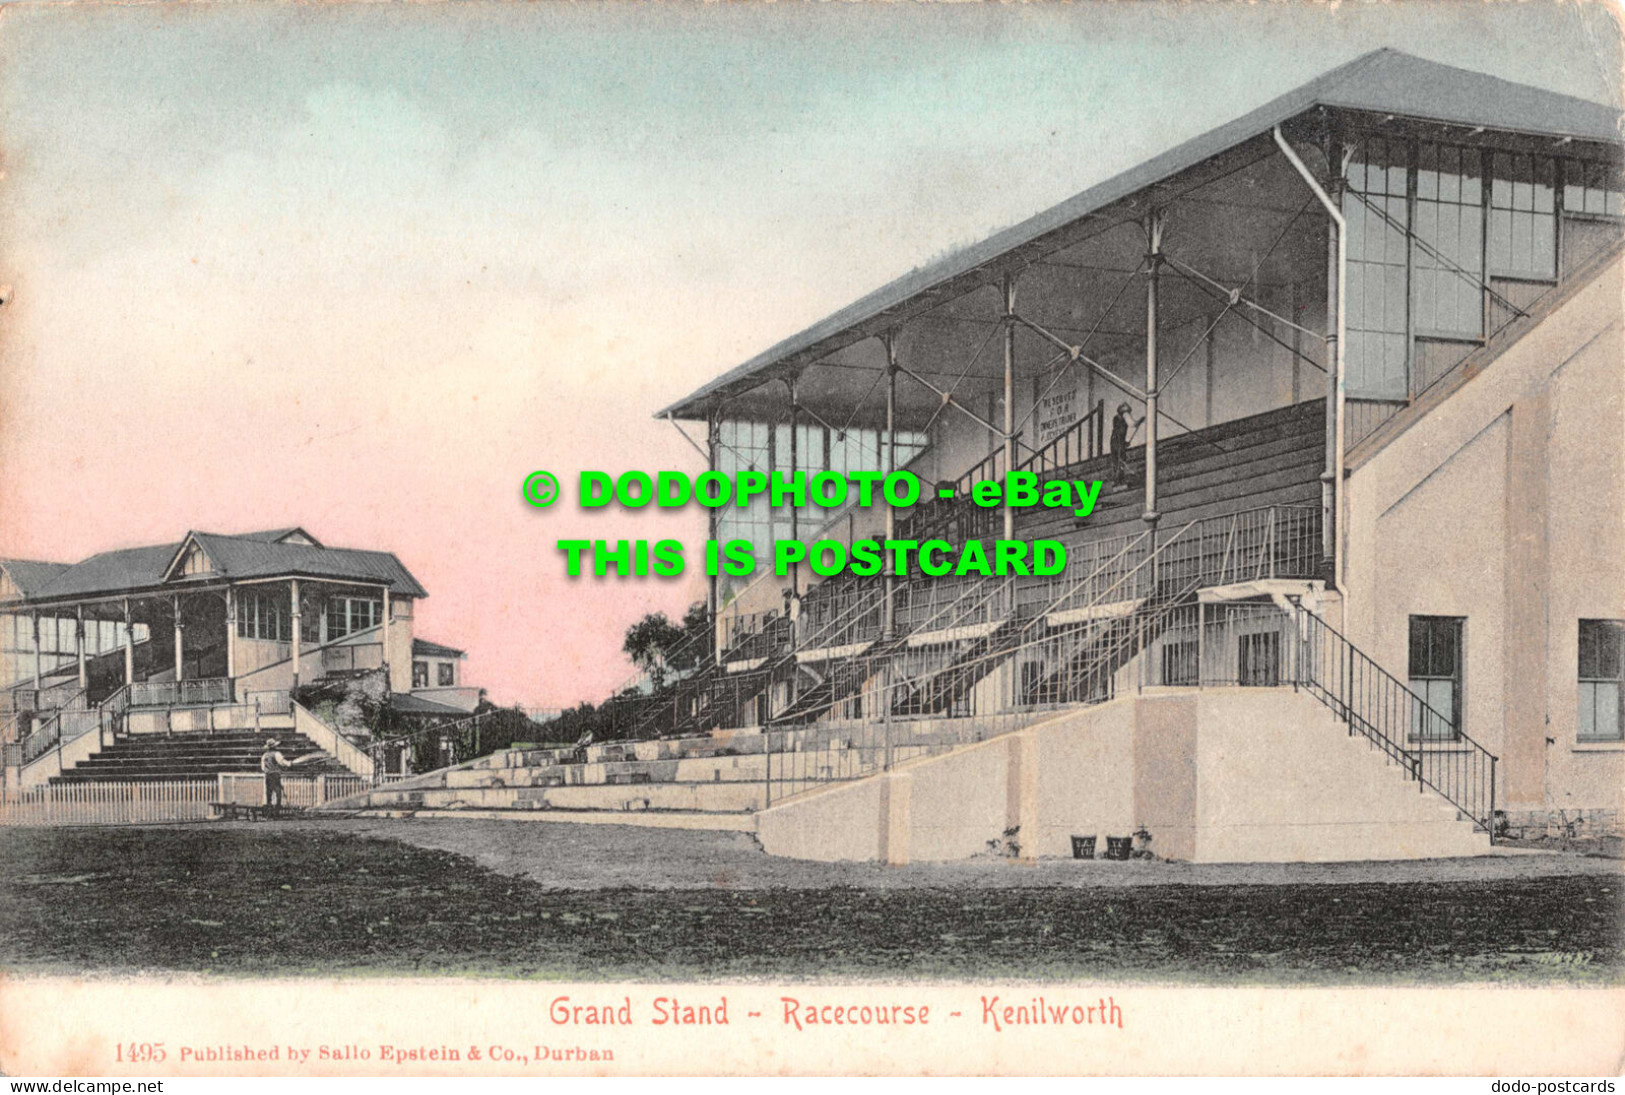 R550015 Grand Stand. Racecourse. Kenilworth. 1495. Sallo Epstein - World